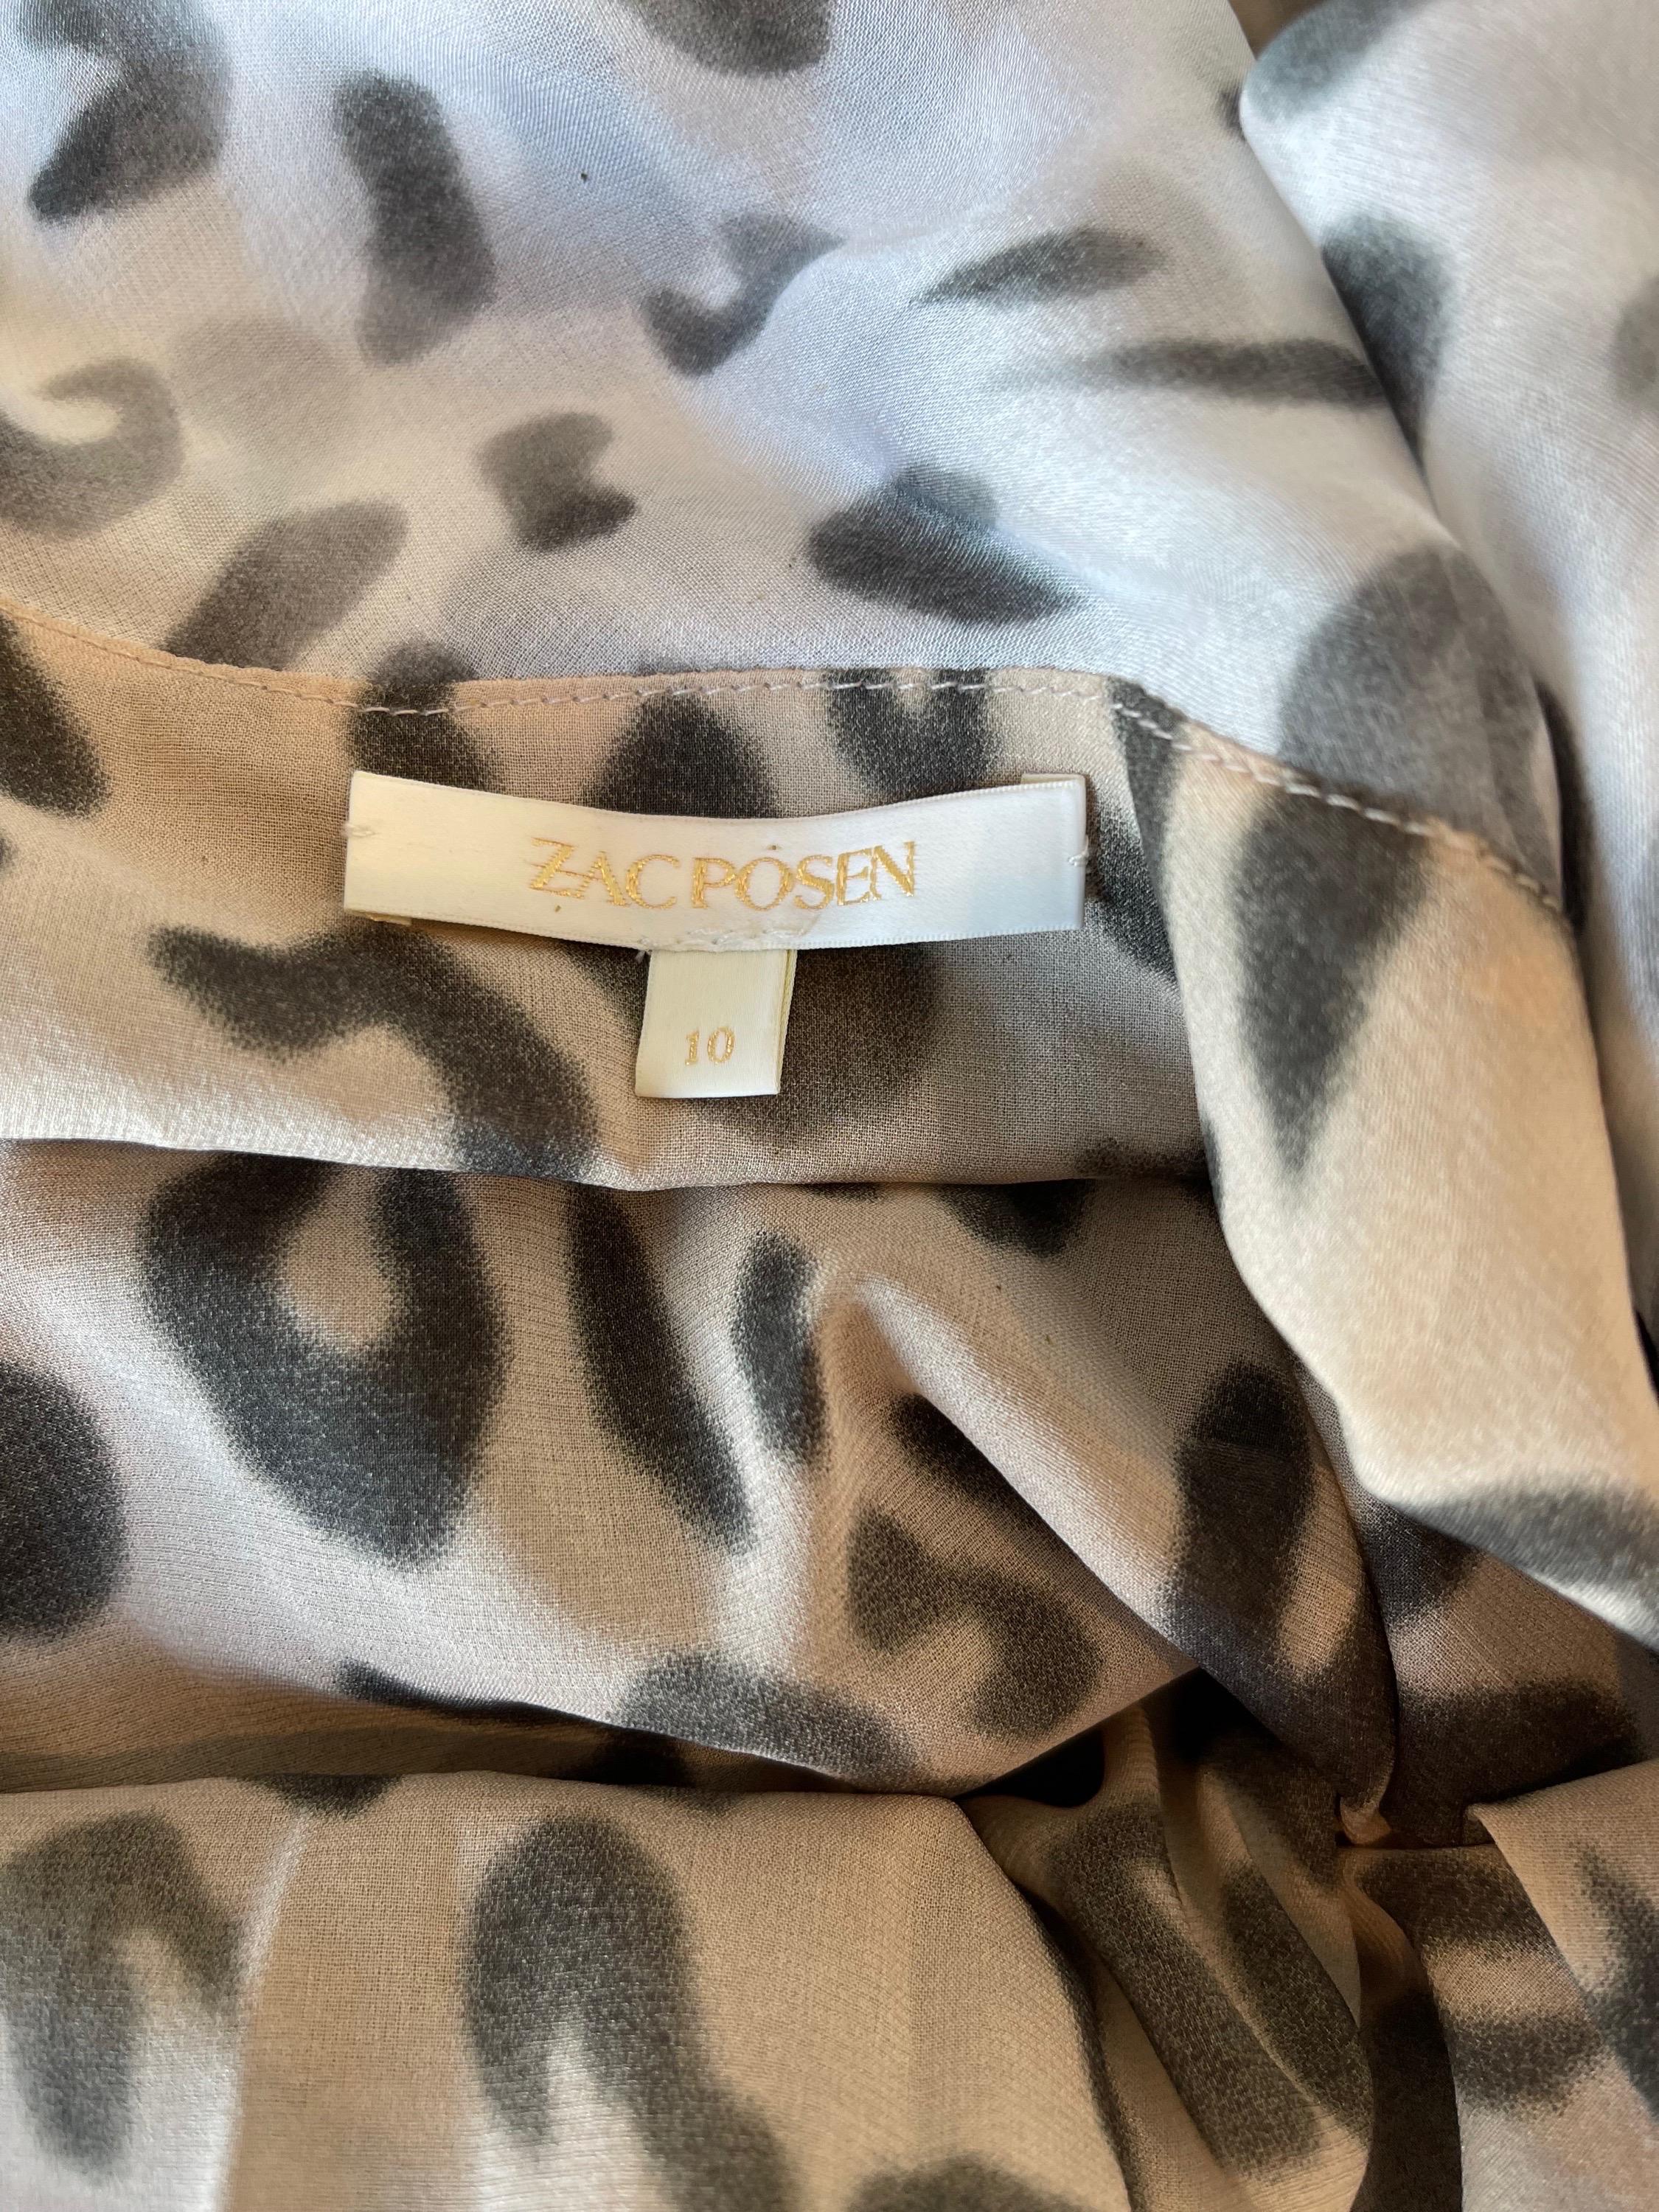 Schickes ärmelloses Hemd mit Leopardenmuster aus Seide von ZAC POSEN Frühjahr 2009 ! Schöner, schmeichelhafter Faltenwurf mit grauen und weißen Leopardenflecken. Wird einfach über den Kopf gestülpt. Kann leicht nach oben oder unten gekleidet werden.